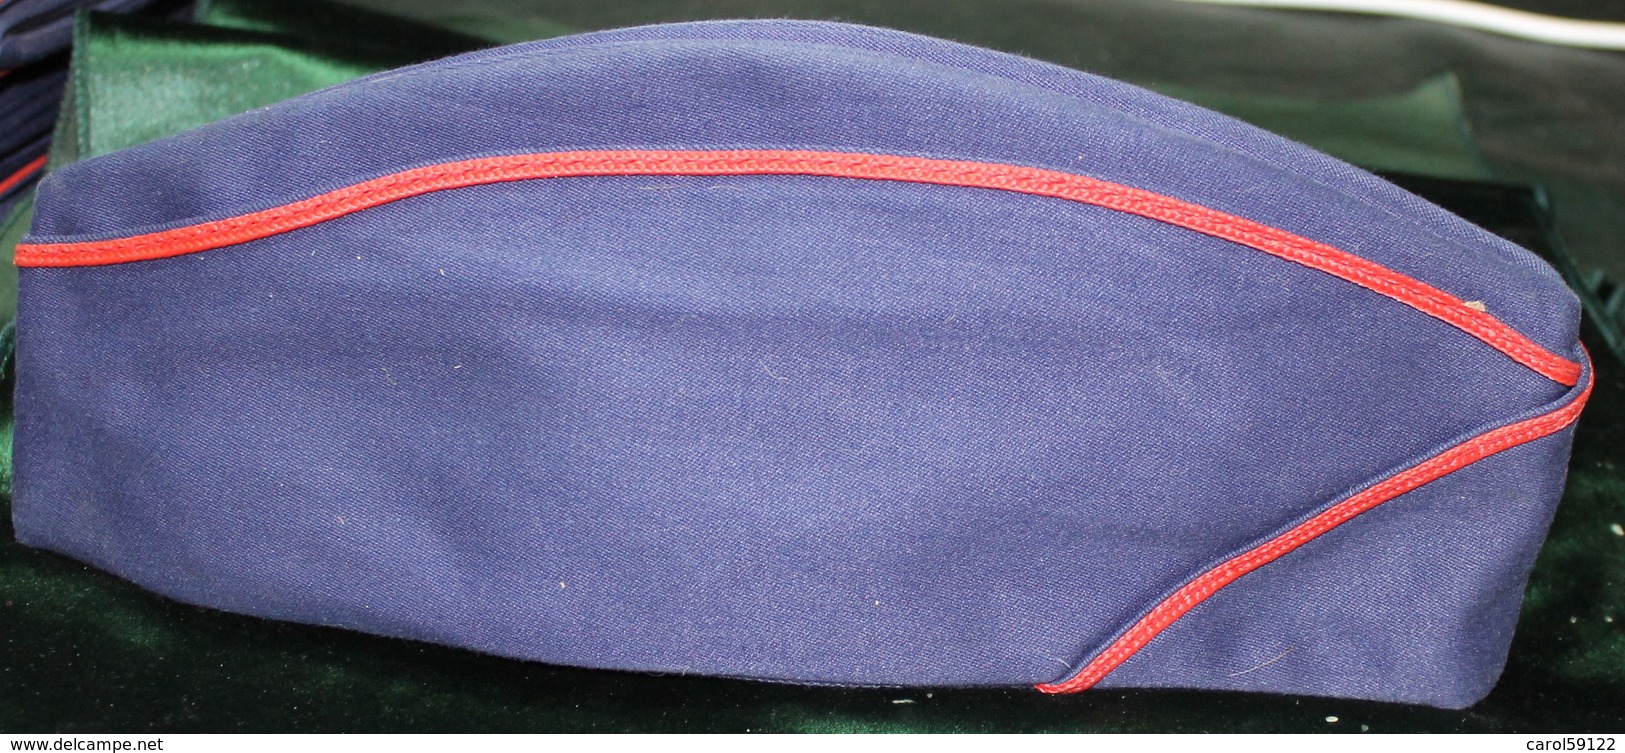 Calot Tissus Bleu Marine T 56 - Headpieces, Headdresses